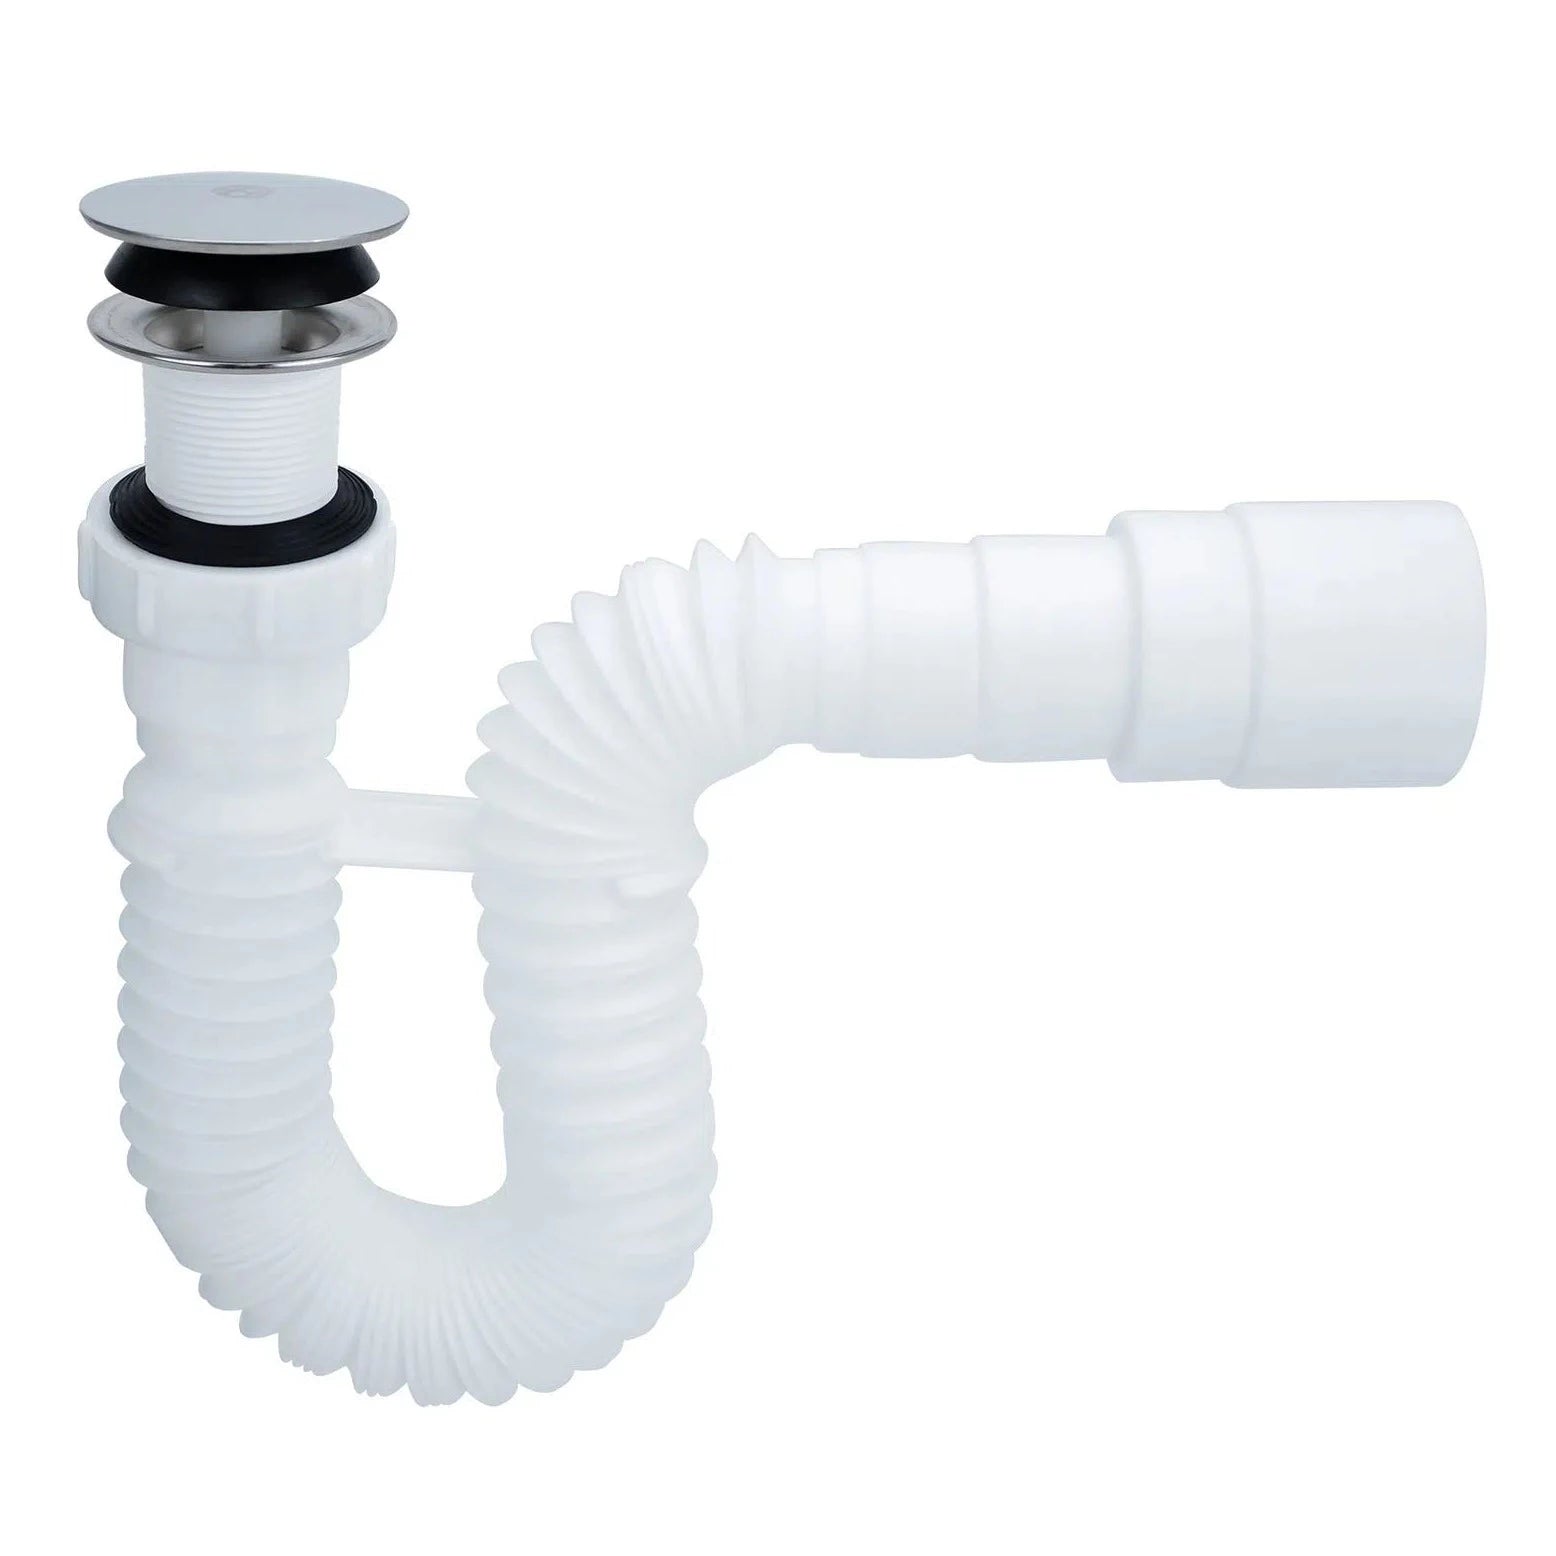 Sifon flexible plastico para lavamanos 1-1/4 pulg